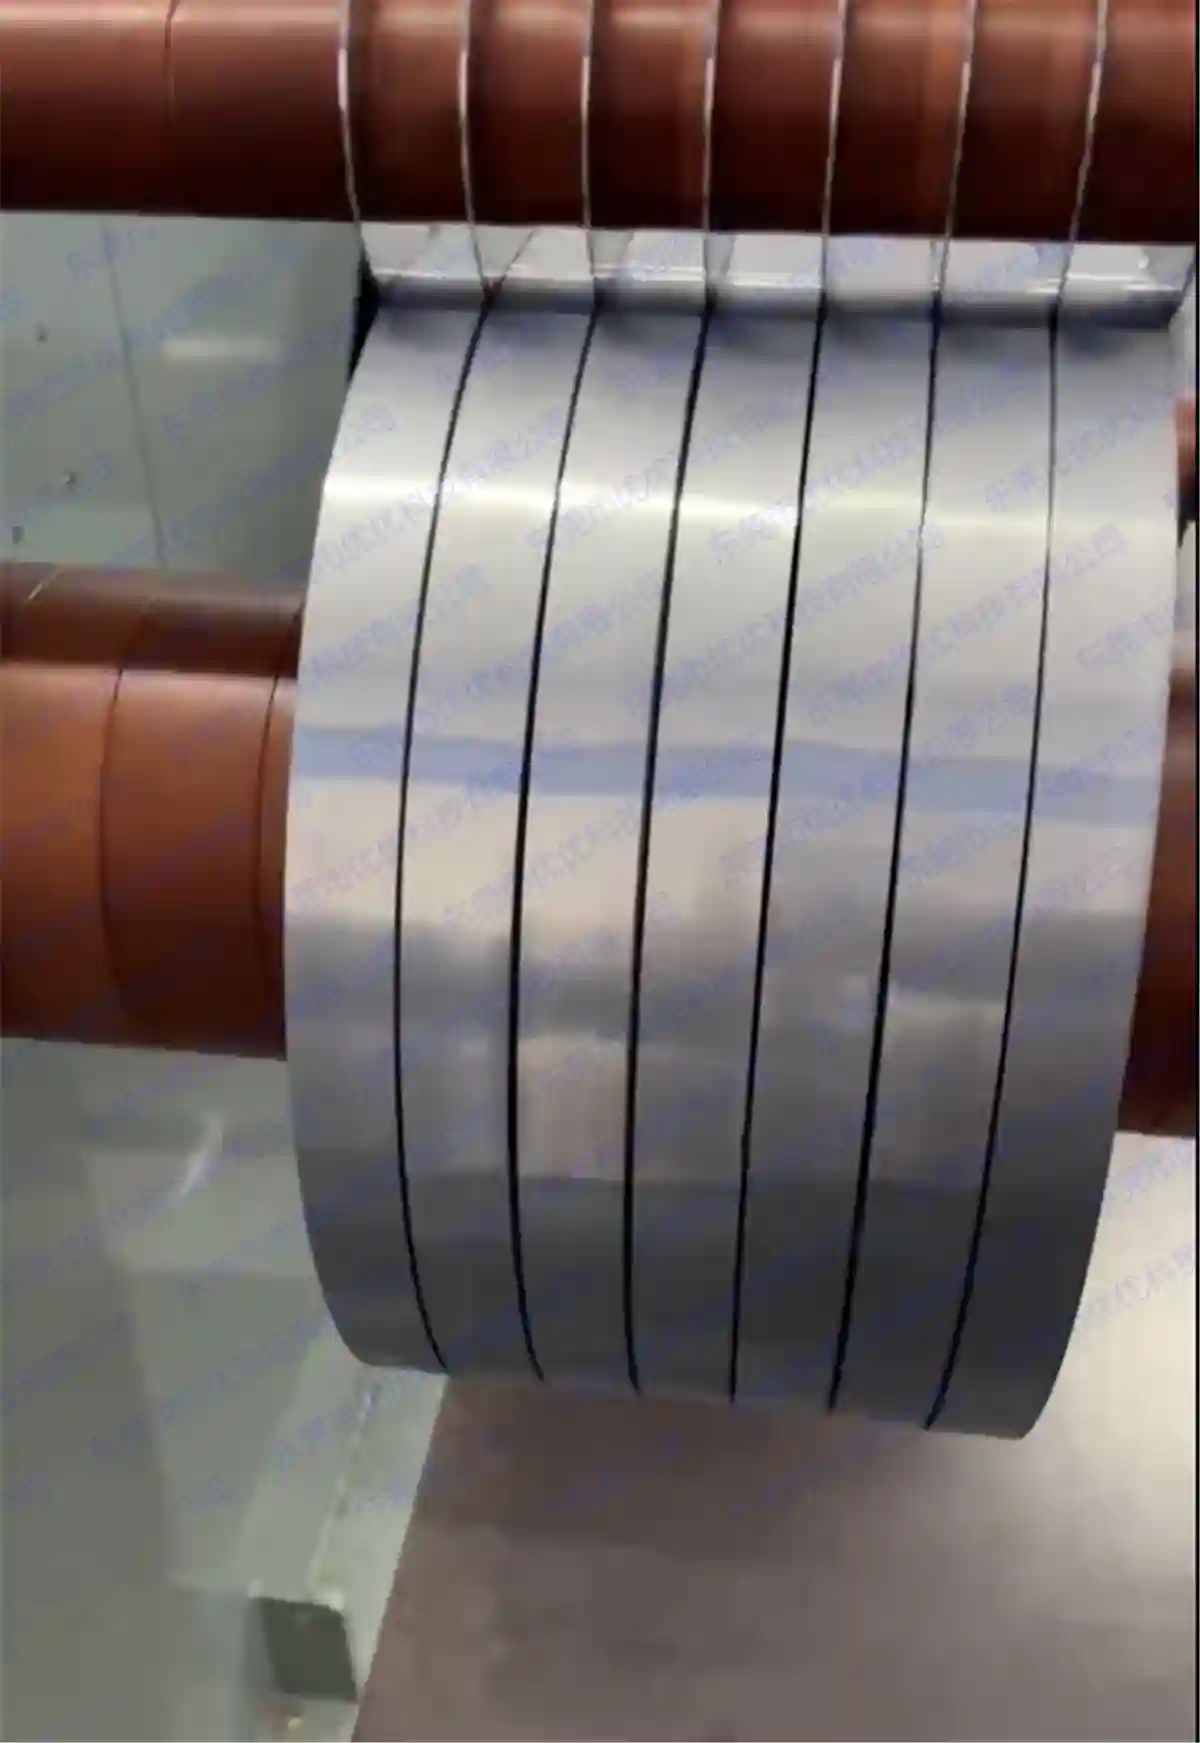 Ultratunn skärning och skivning av silikonstål (minsta bredd 5 mm)